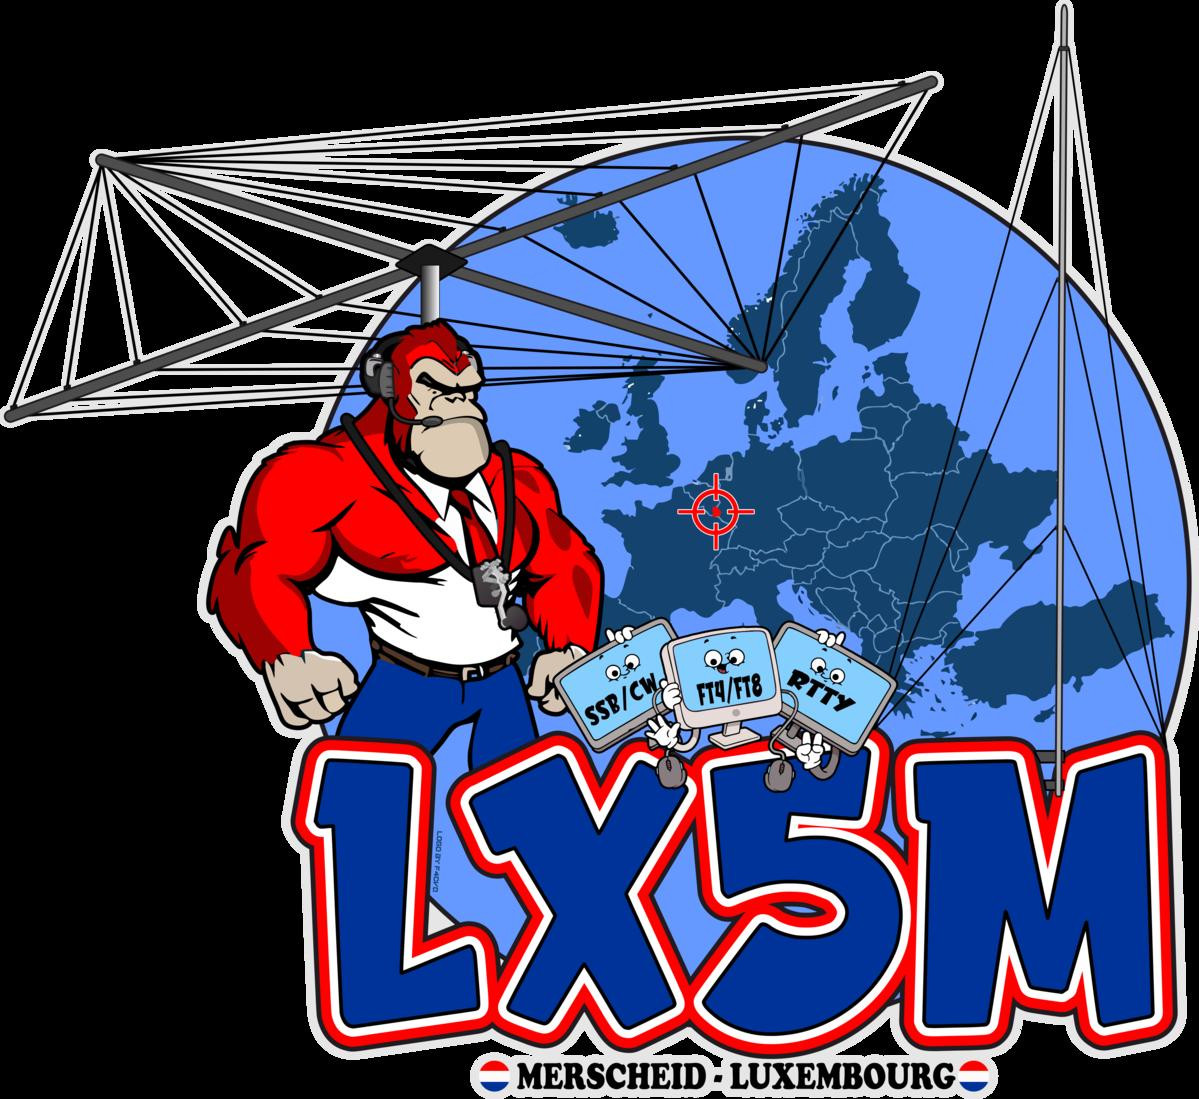 LX5M Merscheid, Luxembourg